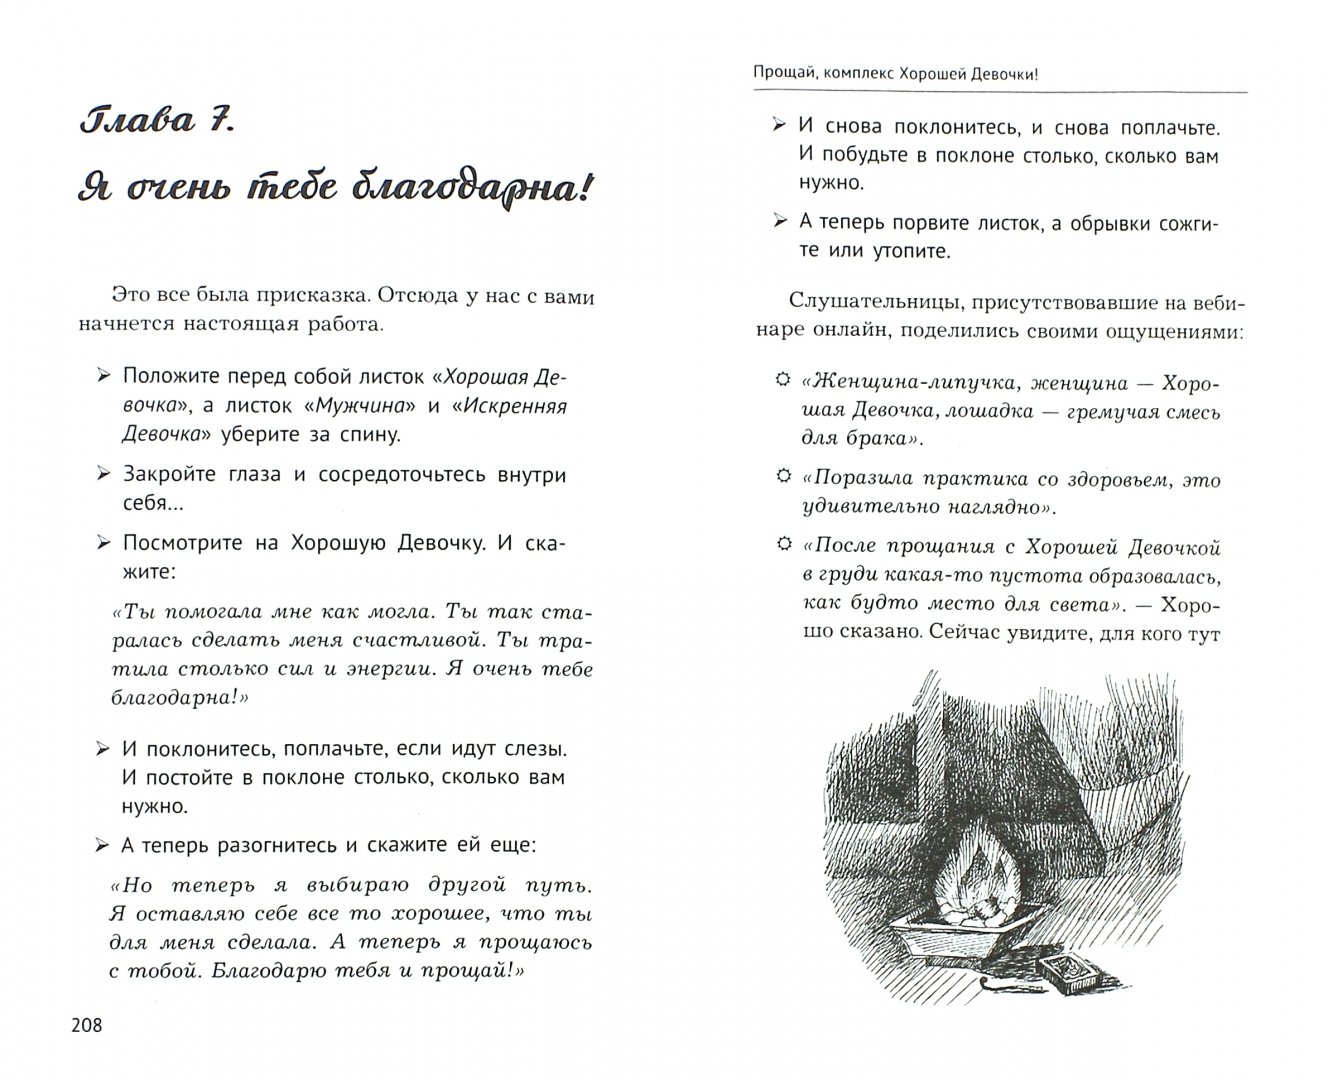 Иллюстрация 2 из 25 для Женское счастье - есть! Ключи вы найдете здесь! - Димитрошкина, Кущенко | Лабиринт - книги. Источник: Лабиринт